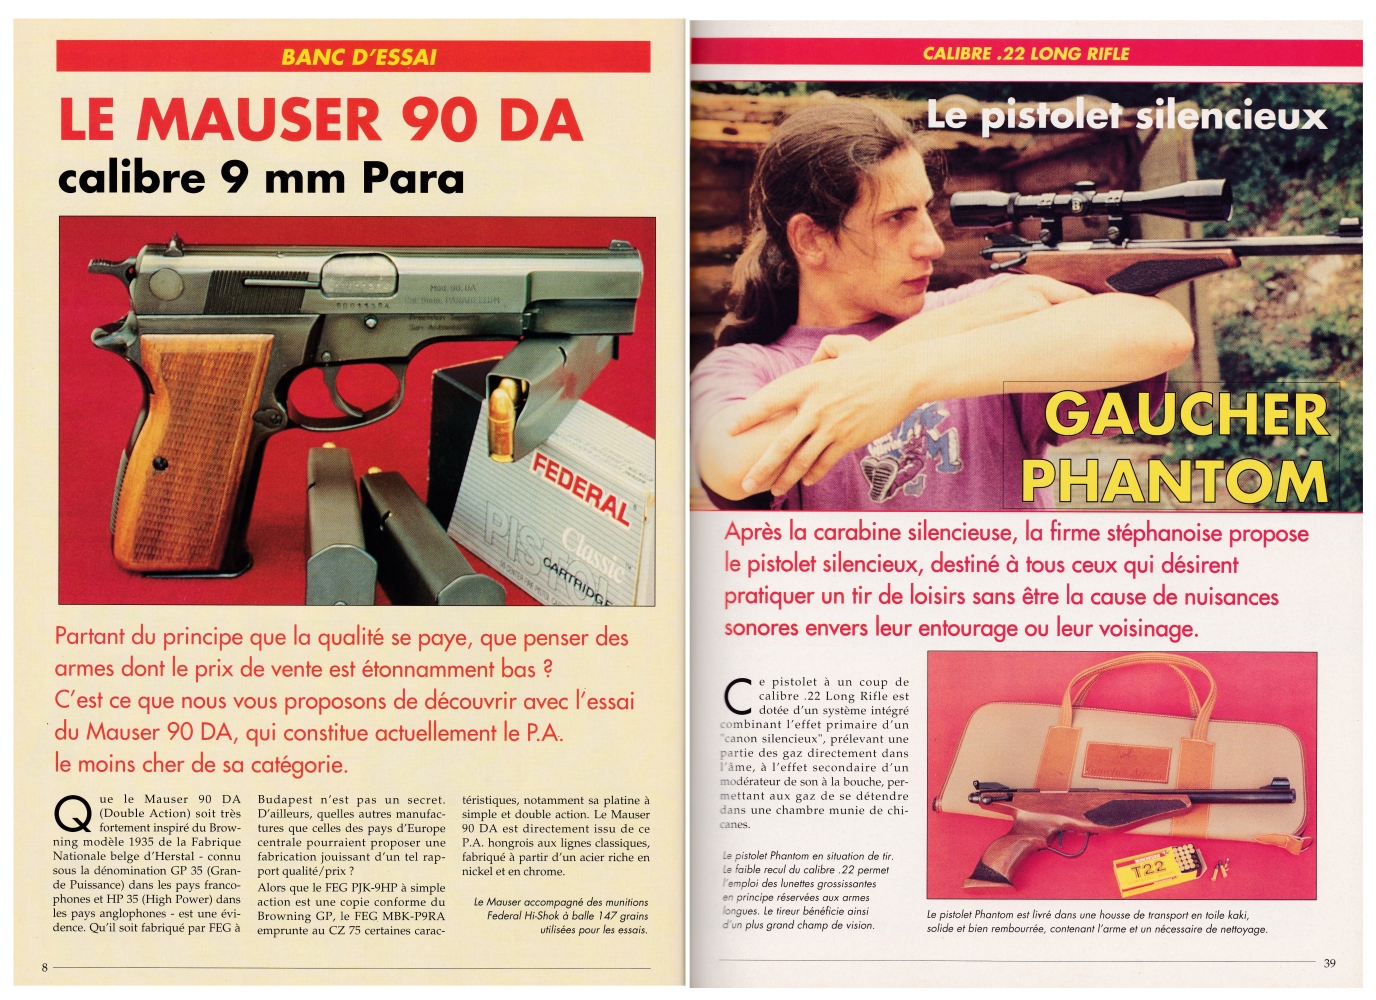 Le banc d’essai du pistolet silencieux Gaucher Phantom a été publié sur 5 pages dans le magazine Action Guns n°180 (septembre 1995).